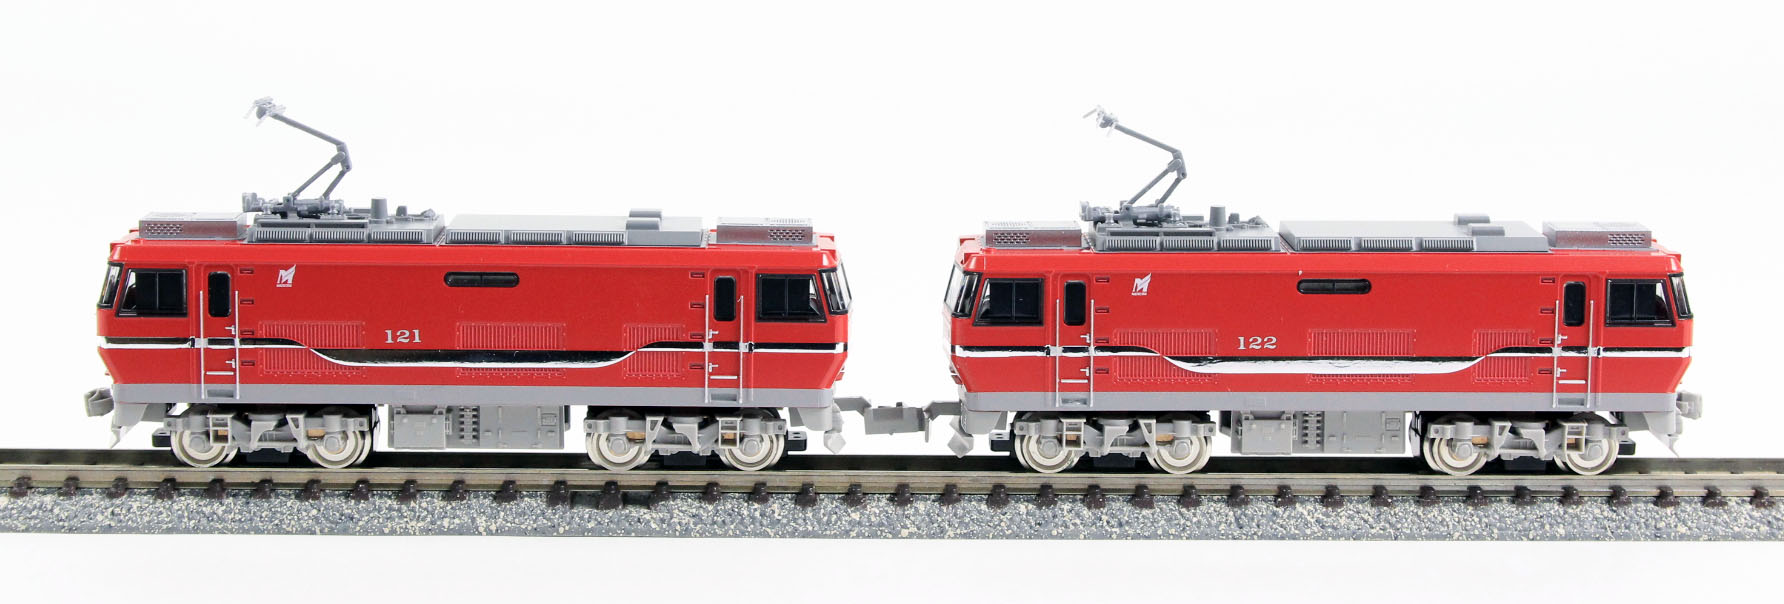 グリーンマックス 30743 名鉄EL120形電気機関車 2両 M+M セット 鉄道 